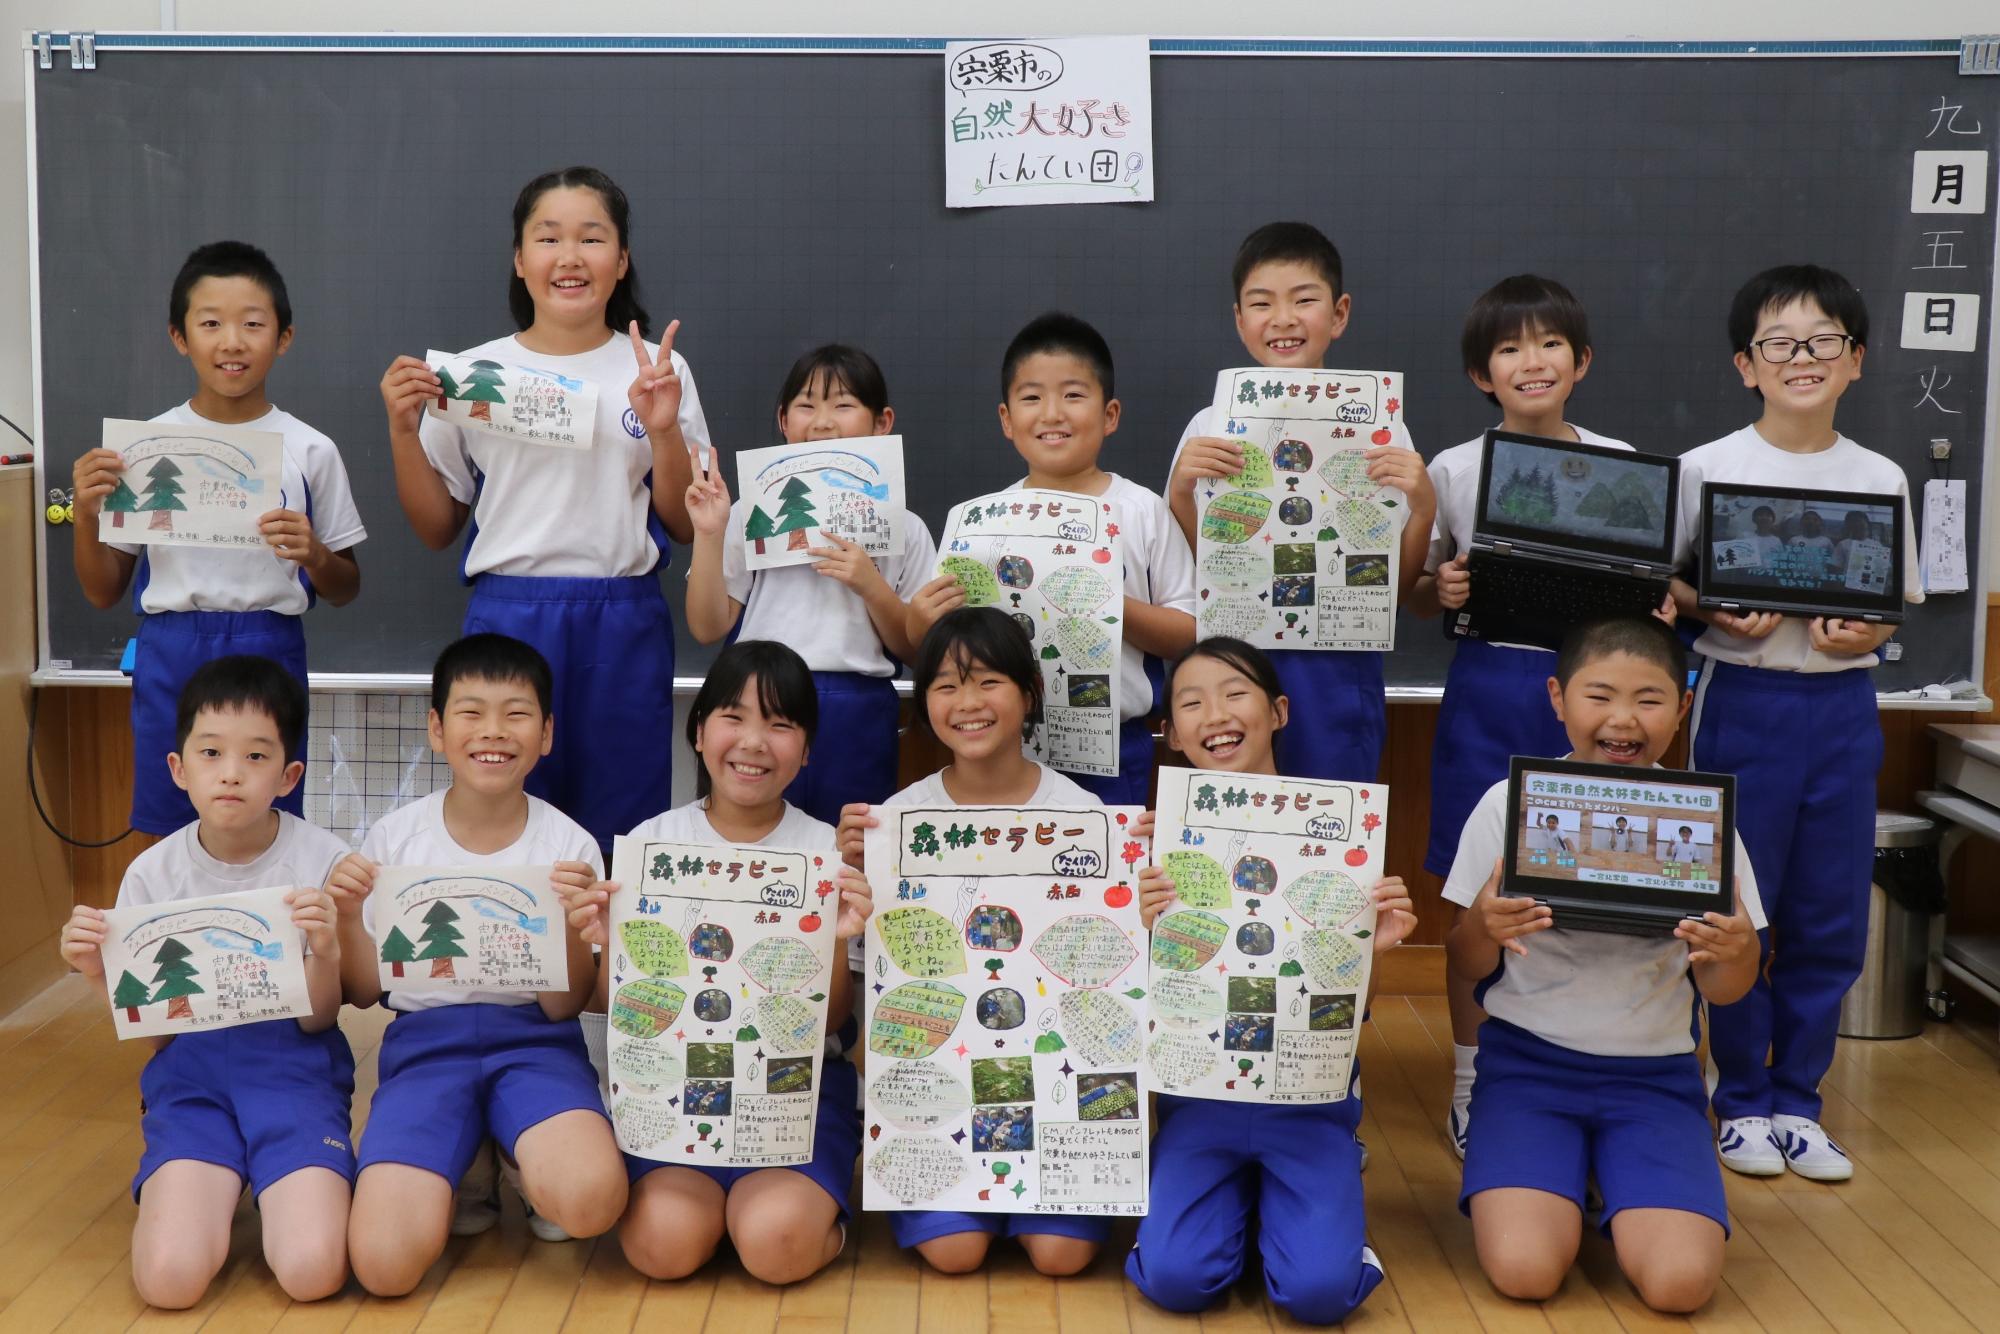 一宮北小学校4年生の13人が教室で、作成したパンフレットなどを手に持ち、2列に並んで笑顔を見せている写真